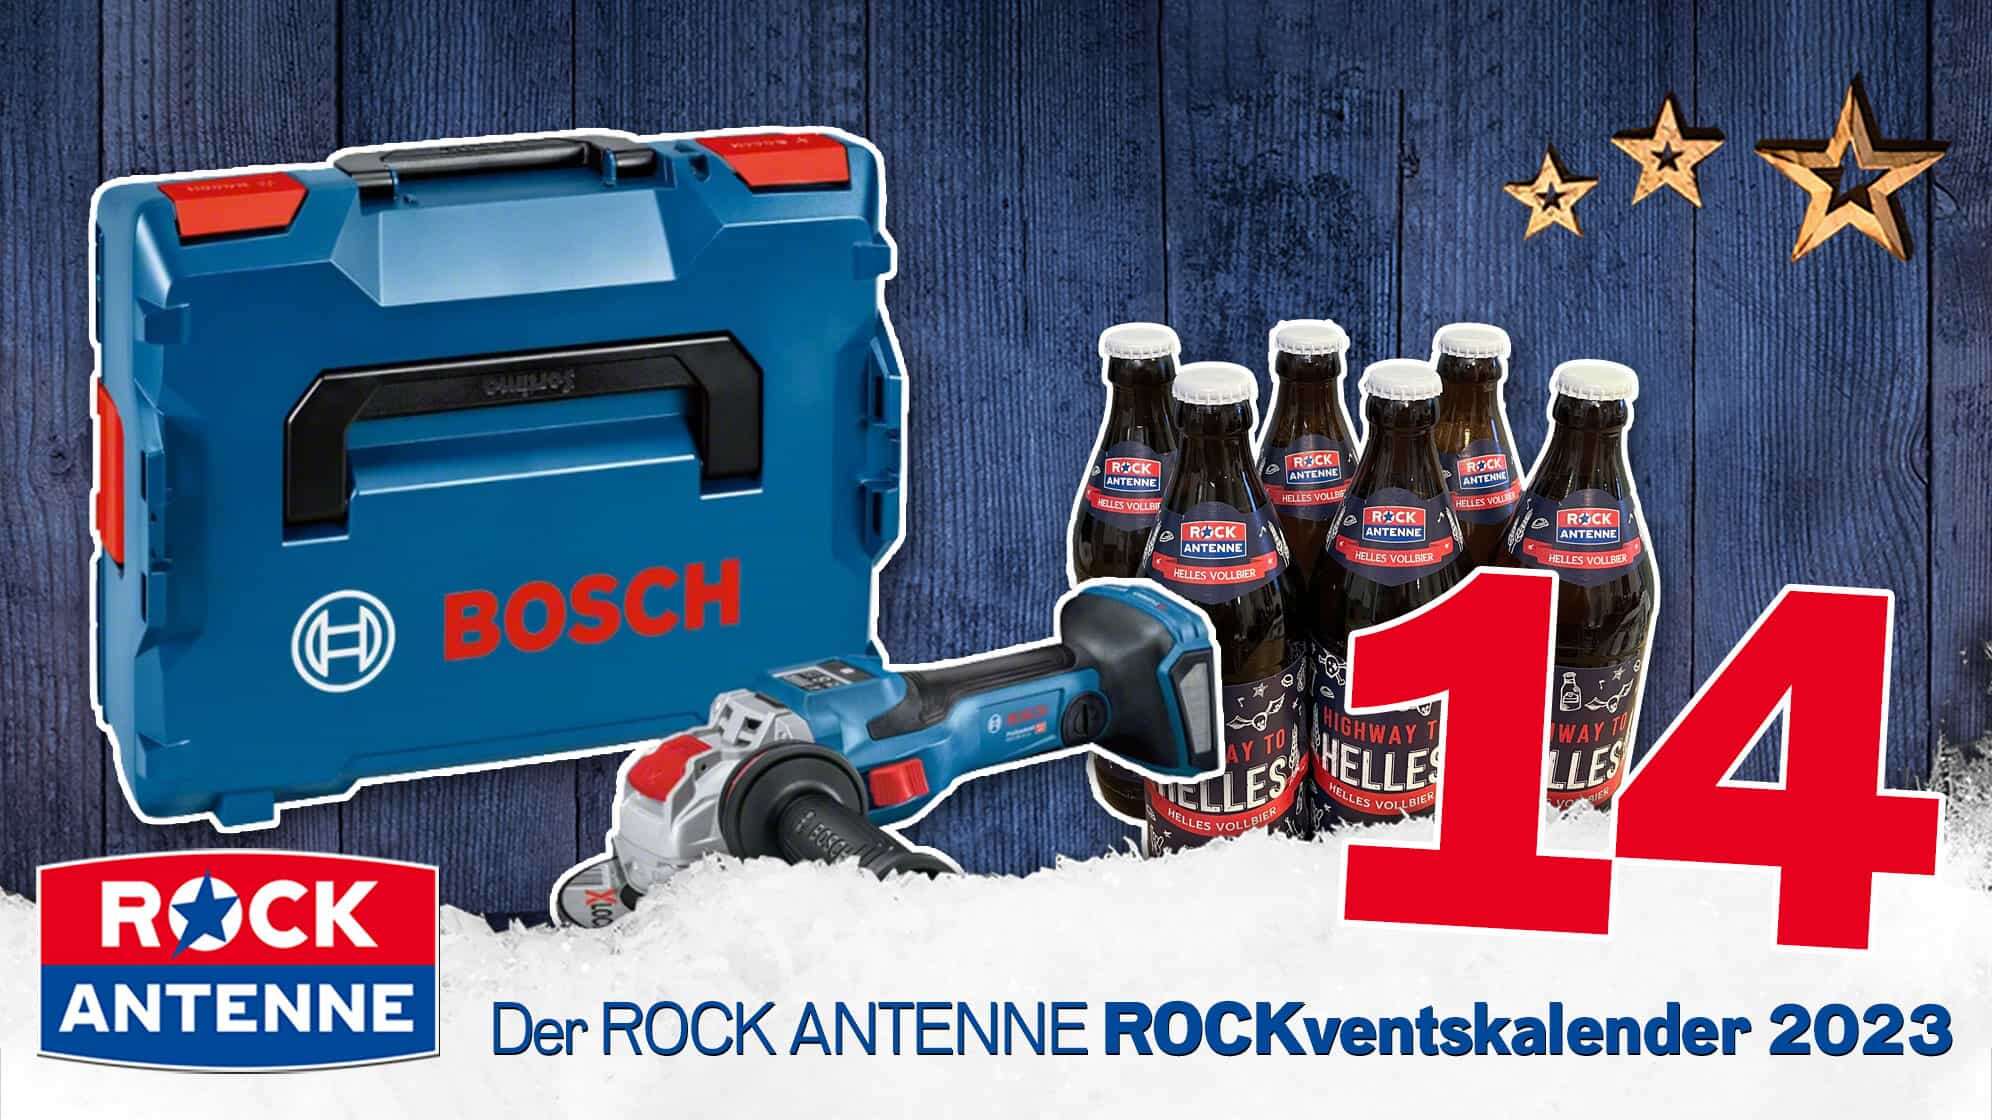 ROCK ANTENNE ROCKventskalender Türchen 14: BOSCH Professional Winkelschleifer Werkzeug Set mit ROCK ANTENNE Bier